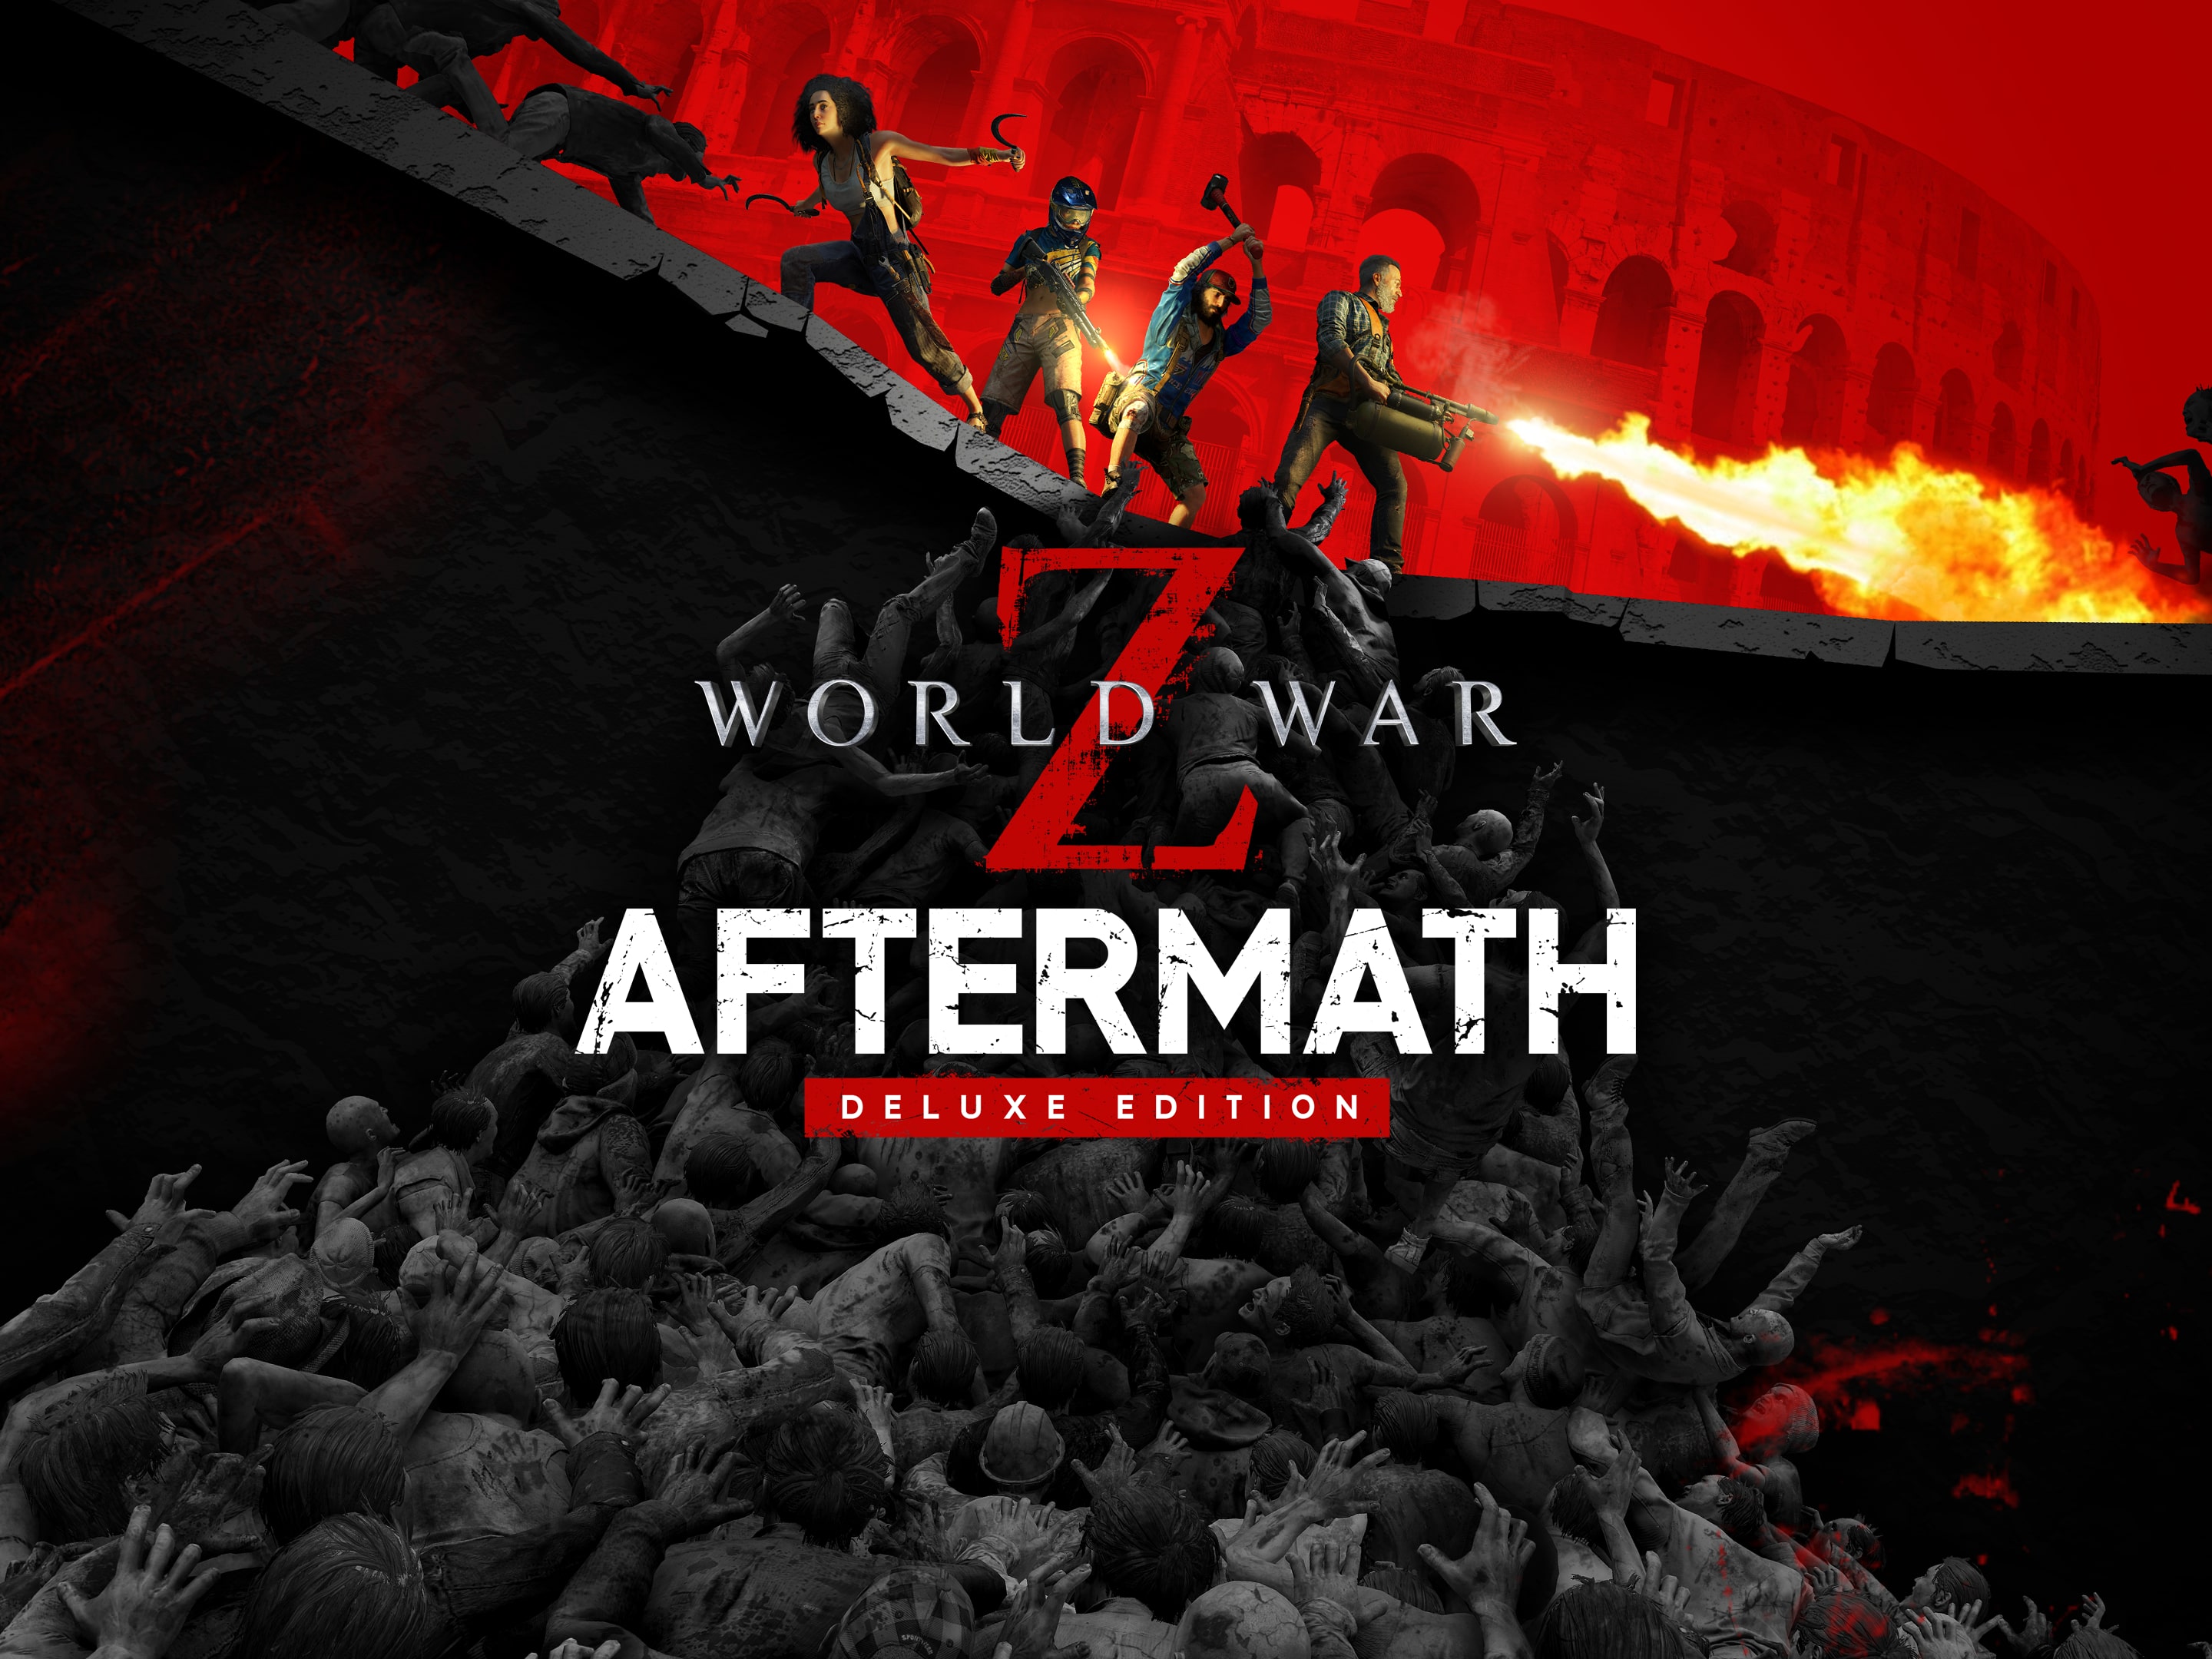  World War Z (PS4) : Video Games